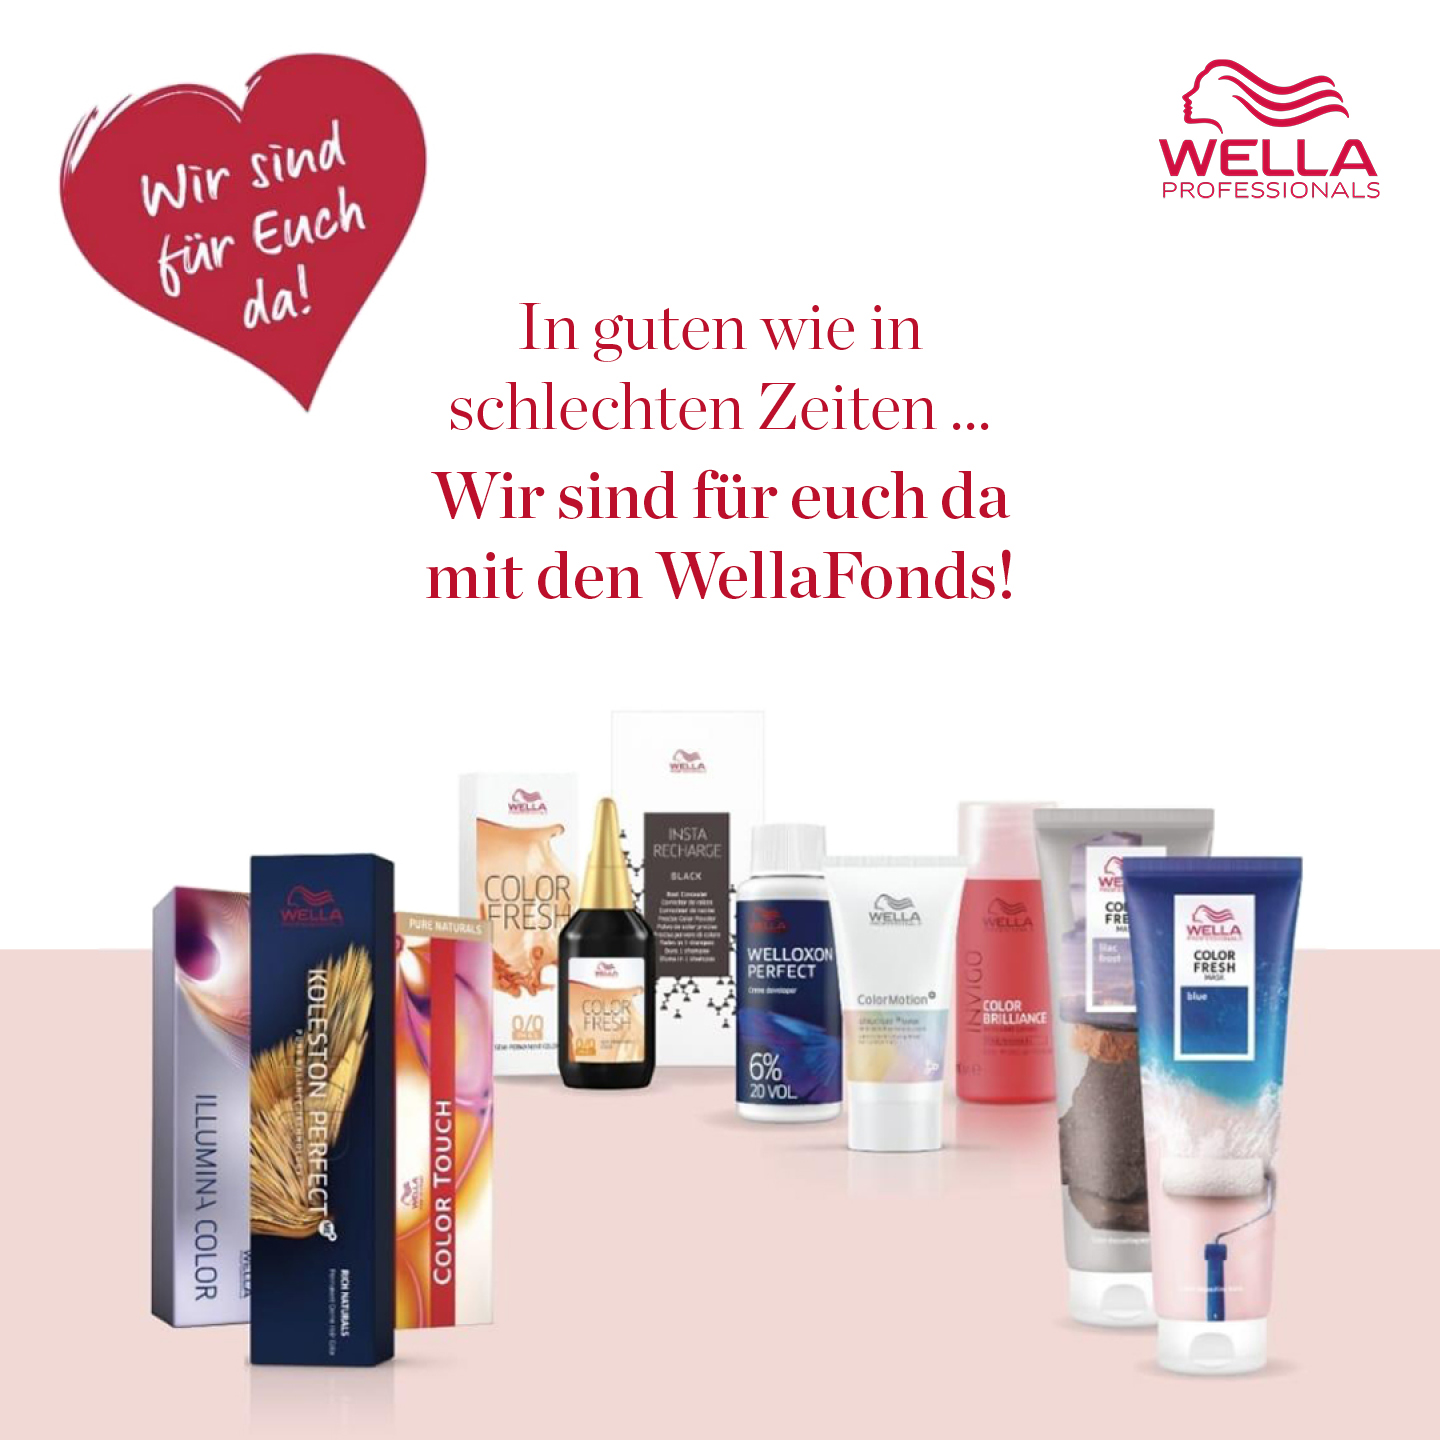 Bild mit Wella Produkten, Wella Logo, Herz mit Text „Wir sind für Euch da!“ und Text „In guten wie in schlechten Zeiten…Wir sind für euch da mit den WellaFonds!“